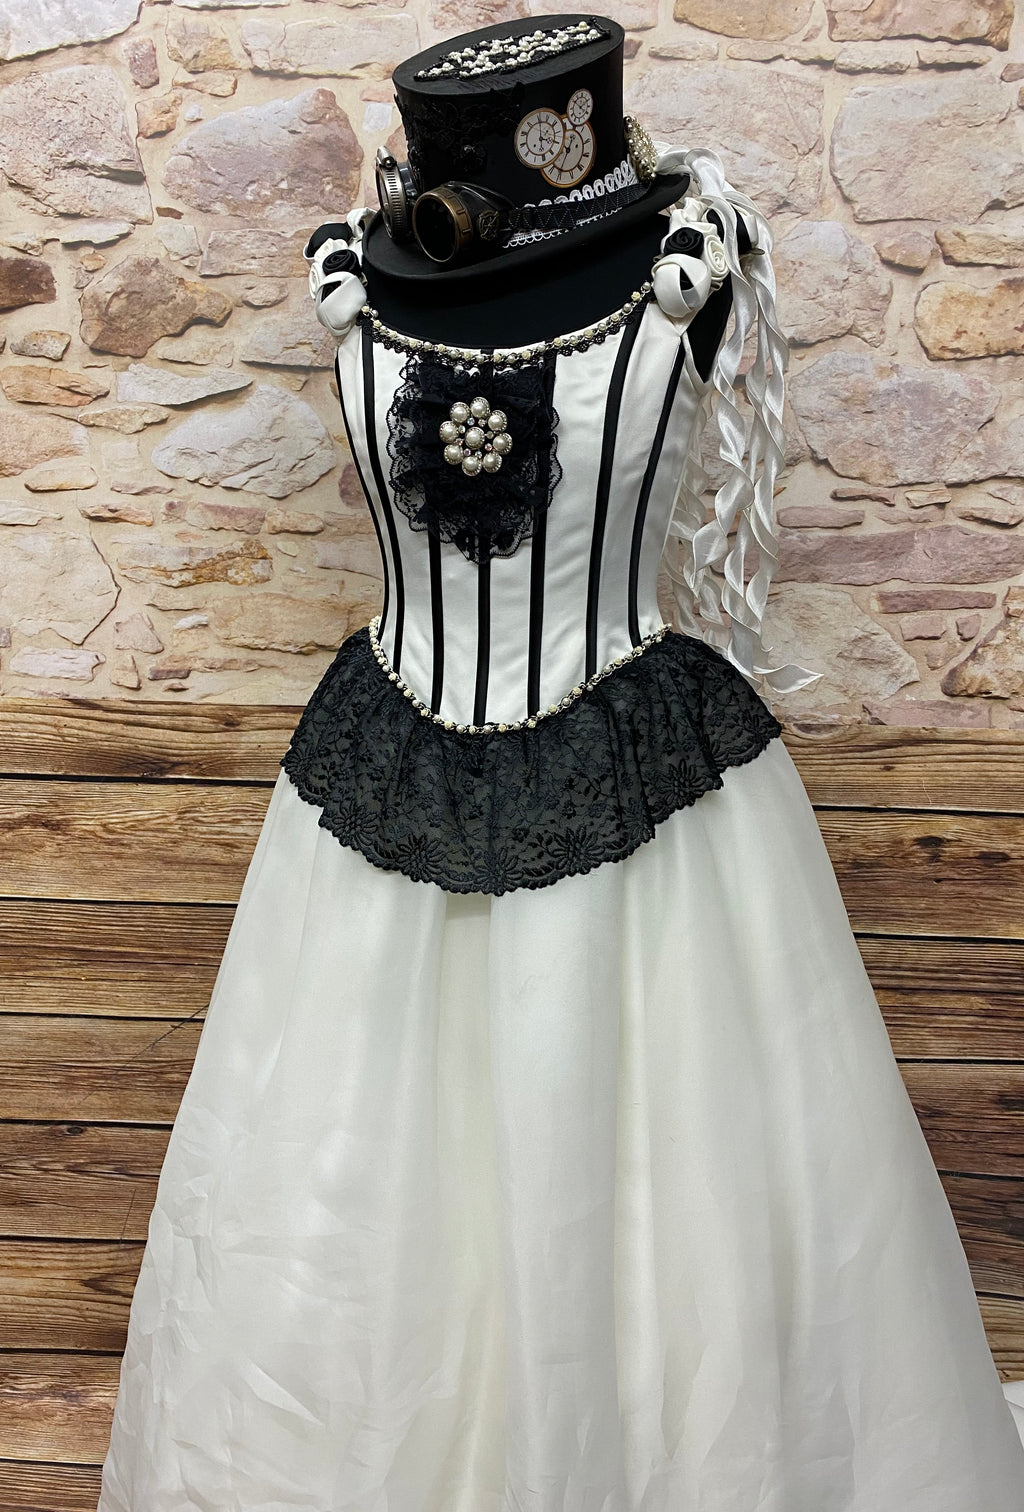 Brautkleid Steampunk Vintage Rokoko Viktorianisch Hochzeitskleid Gr.38 Unikat